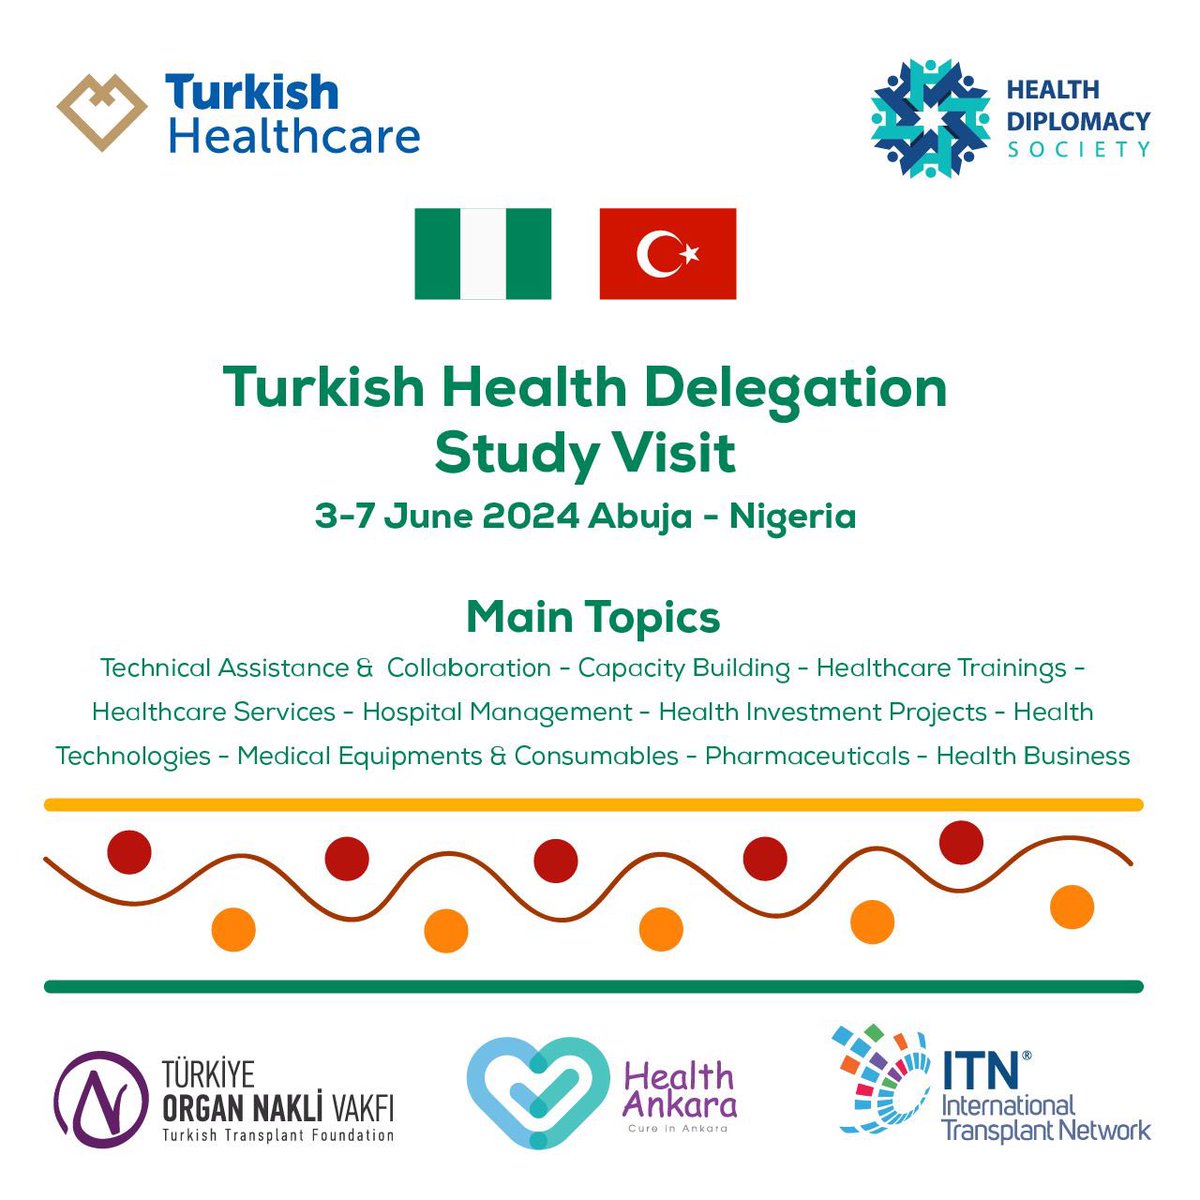 Turkish Healthcare ve @healthdiplomacy kapsamında, @organnaklivakfi #healthankara @ITN_TR işbirliğinde, “Sağlık Heyeti Çalışma Ziyareti”gerçekleşecektir.

3-7 Haziran 2024
Abuja - Nijerya

Program dahilinde tıbbi eğitim verilecektir.

Detaylar  açıklanacaktır.

#medicaltraining